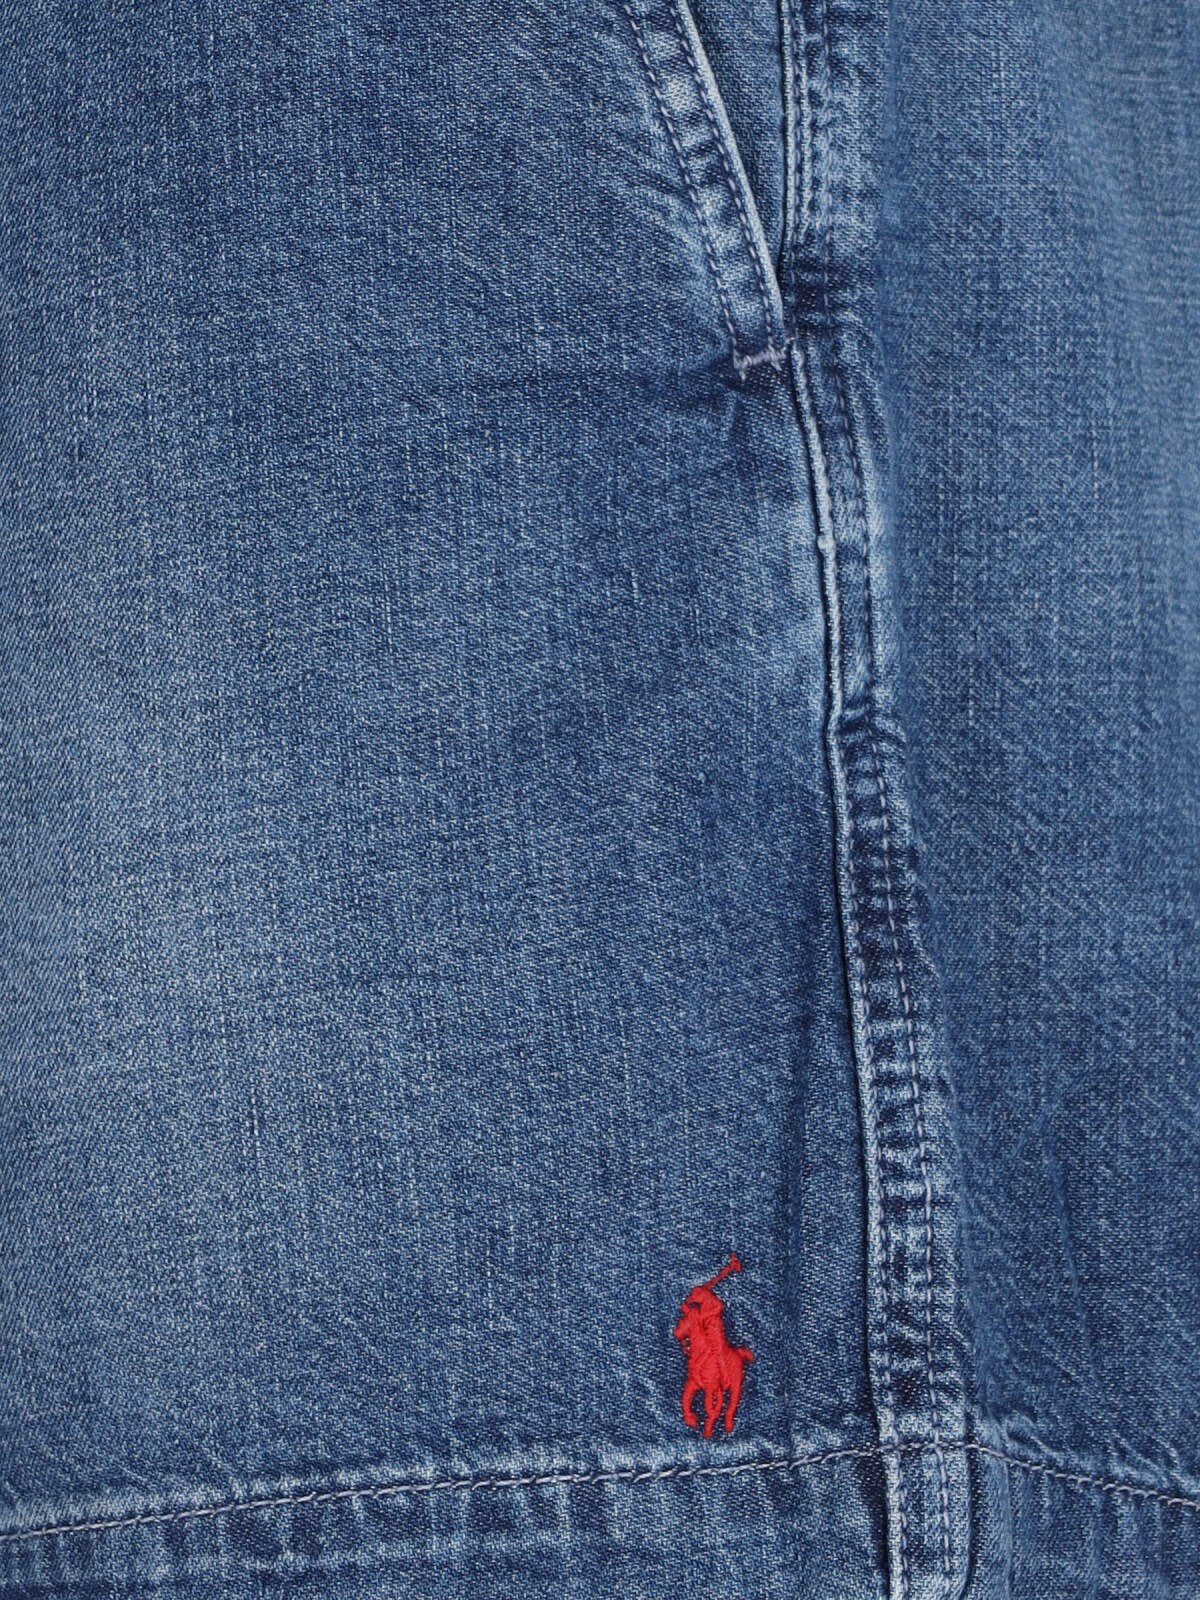 Polo Ralph Lauren Pantaloncini denim logo-Short-Polo Ralph Lauren-Pantaloncini denim logo Polo Ralph Lauren, in cotone blu, dettagli usured, vita elasticizzata, chiusura coulisse, due tasche laterali, due tasche a filetto retro, ricamo logo rosso laterale.-Dresso